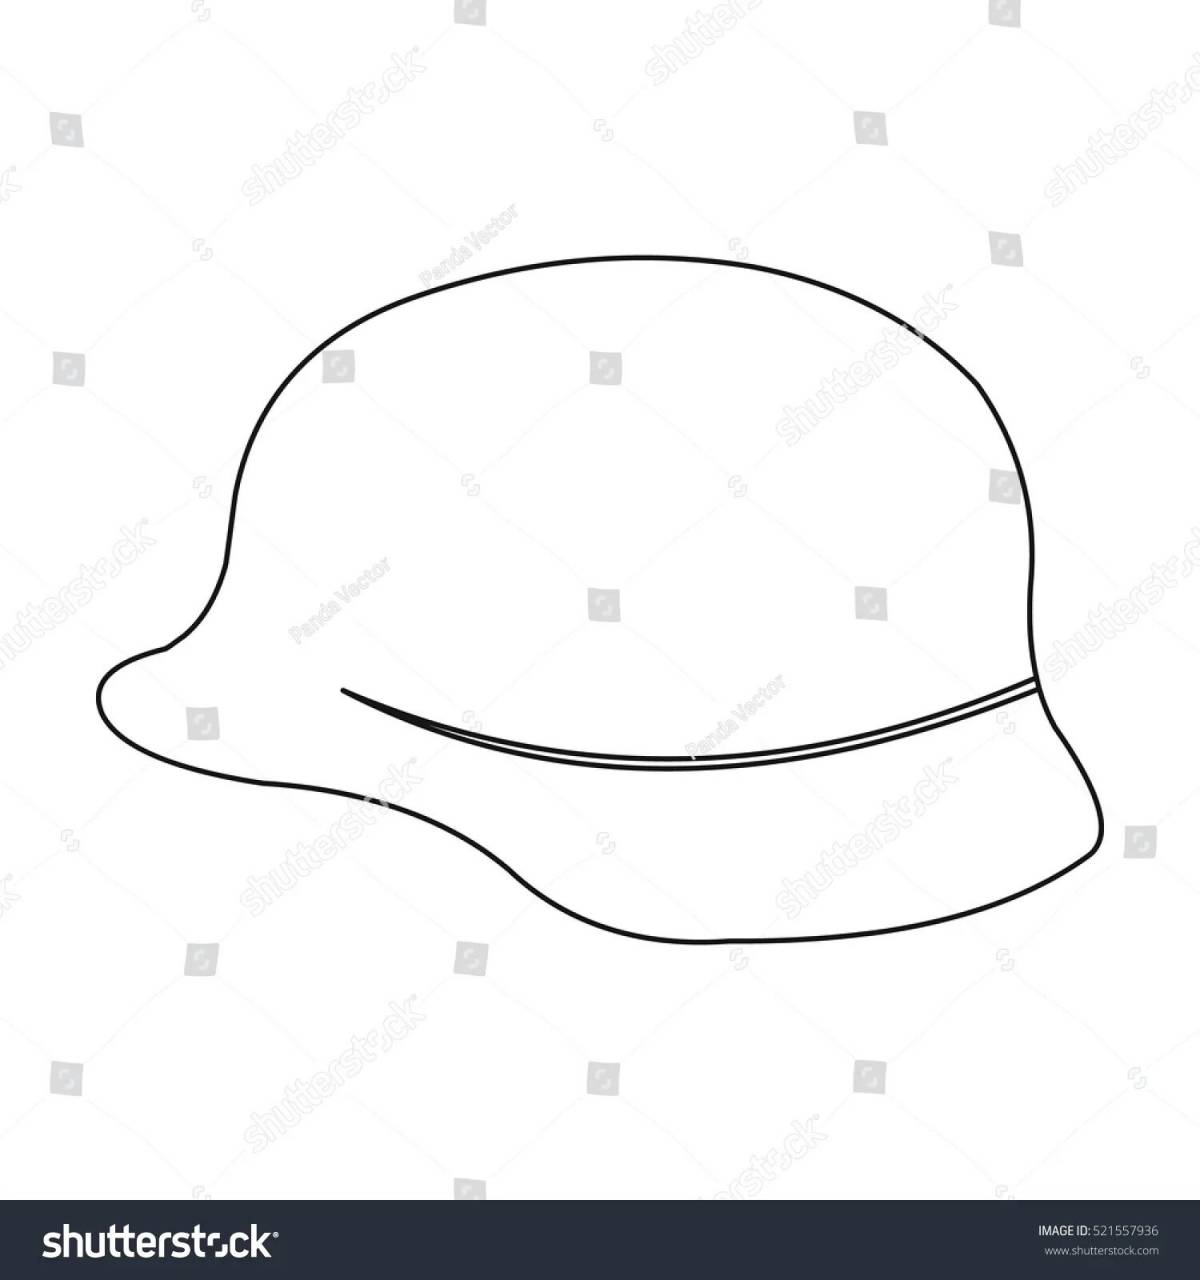 Soldier helmet #20